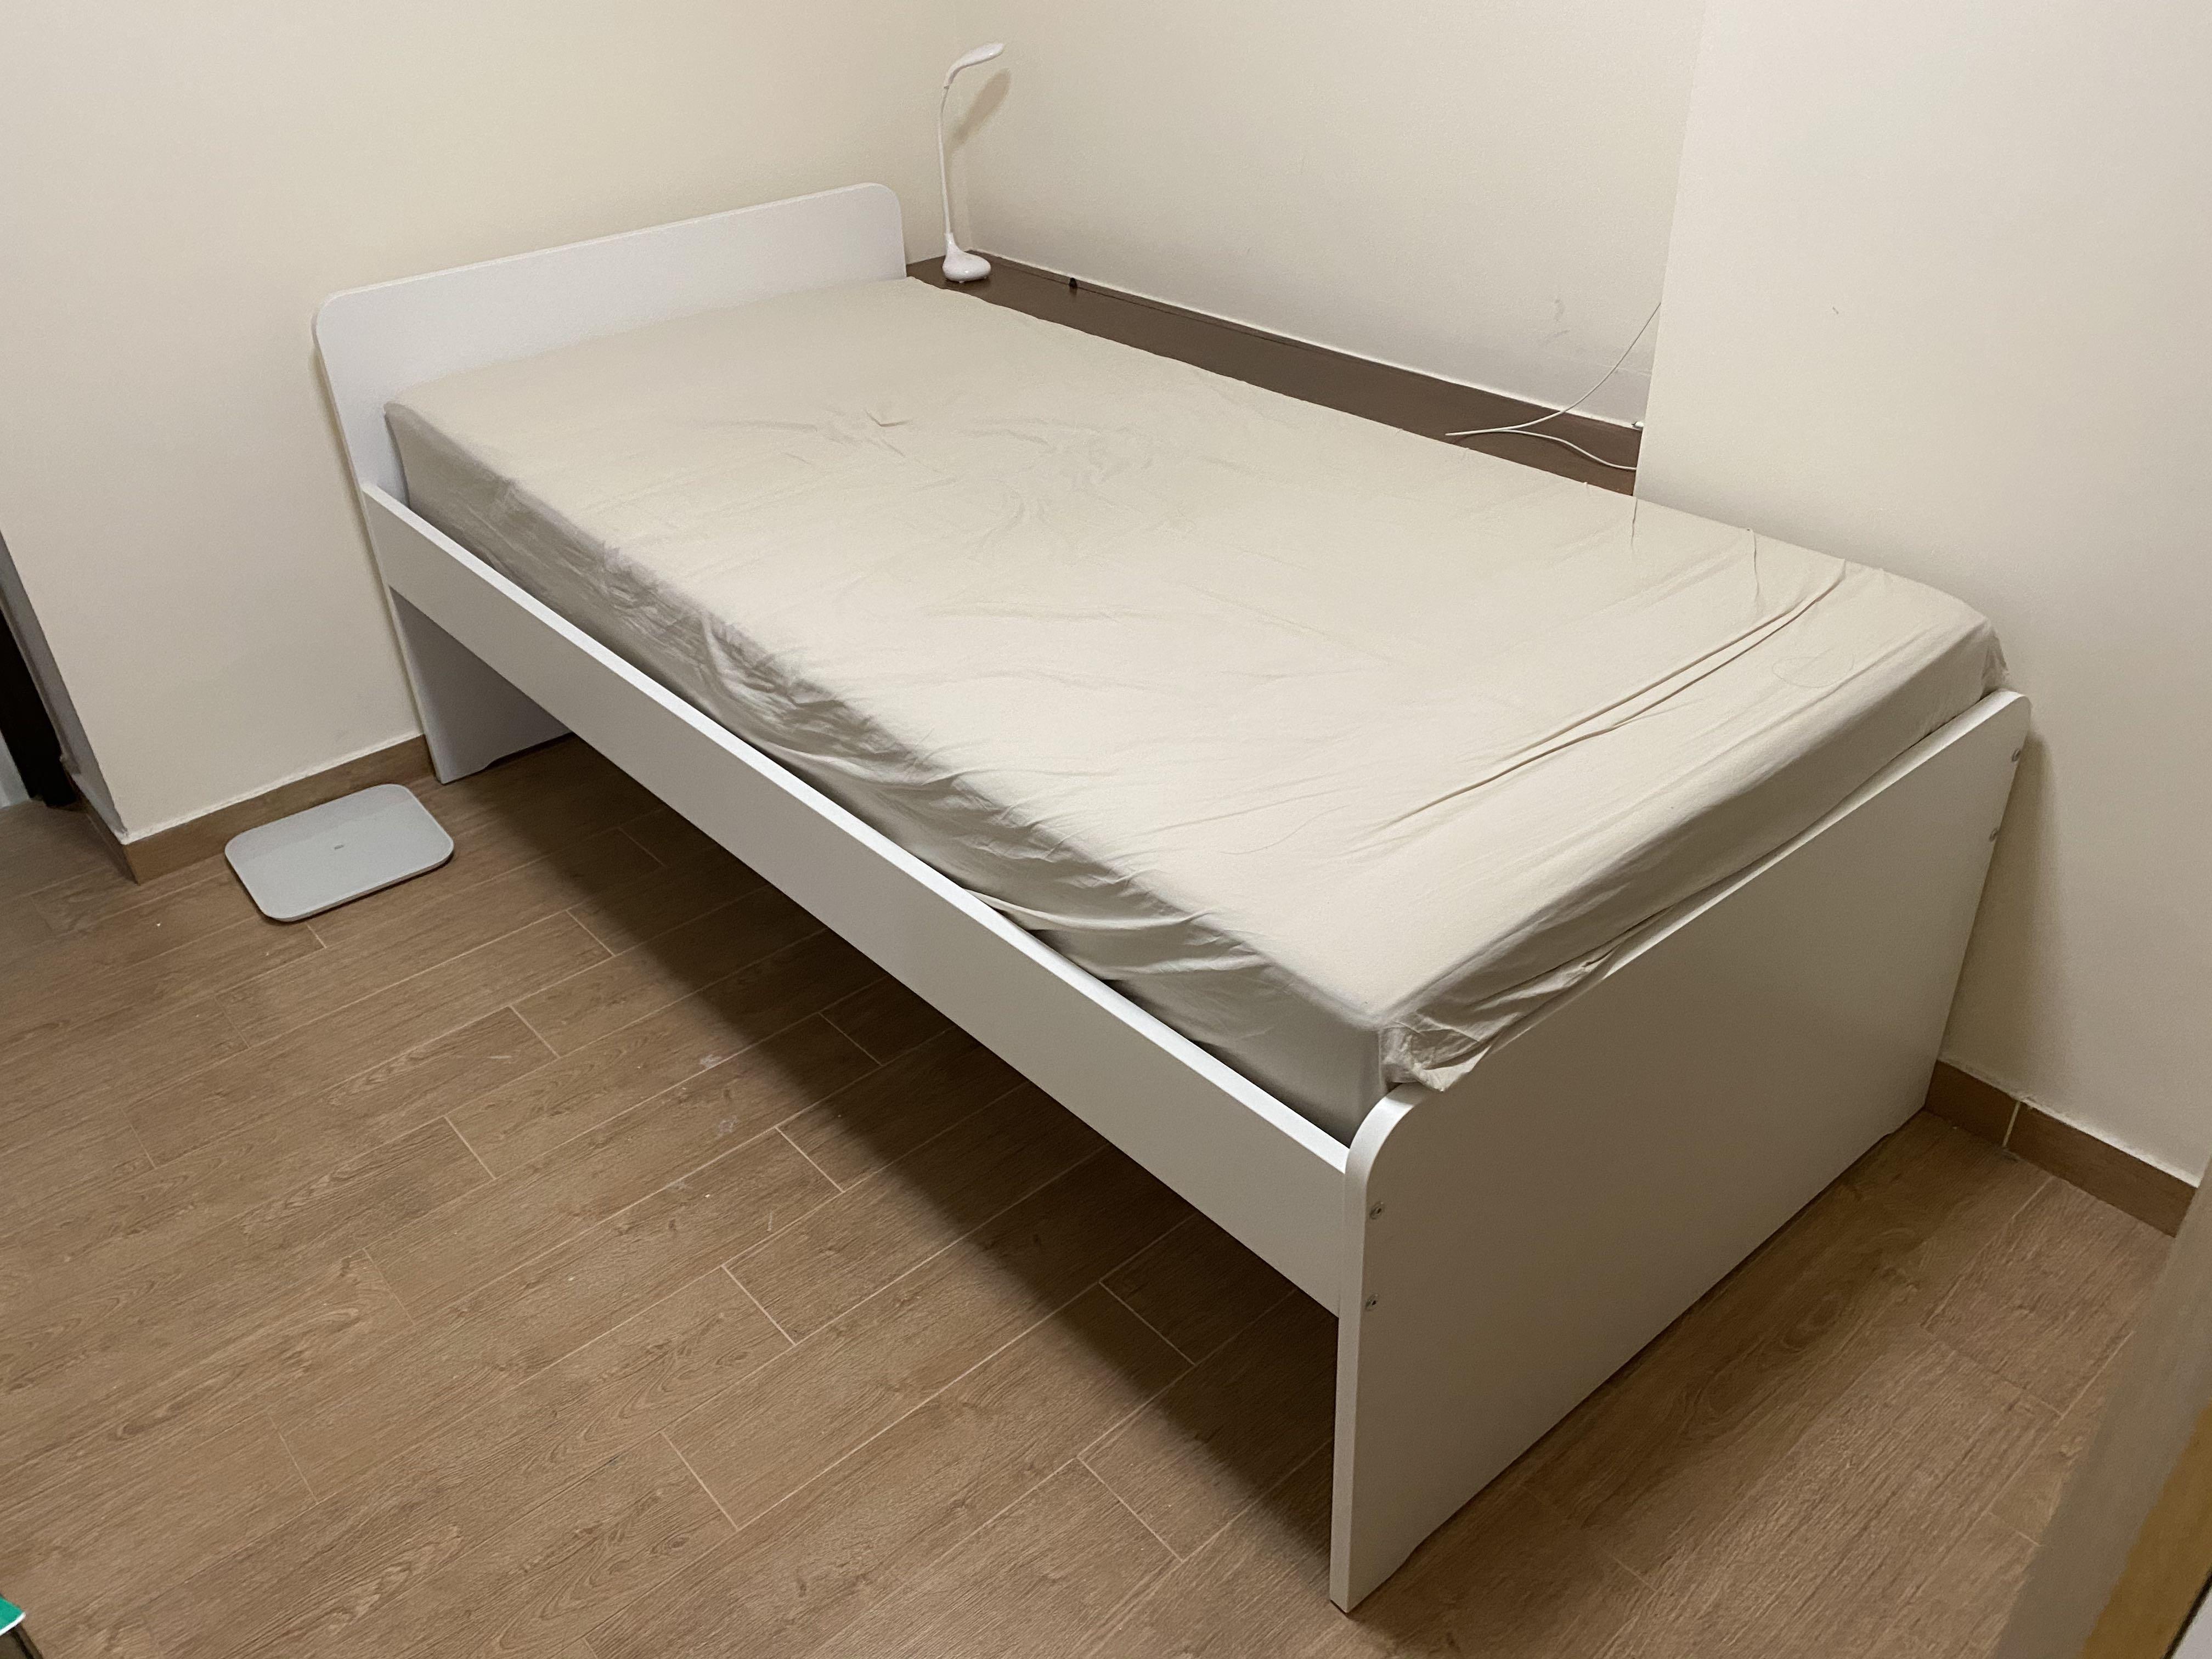 ikea single bed mattress singapore